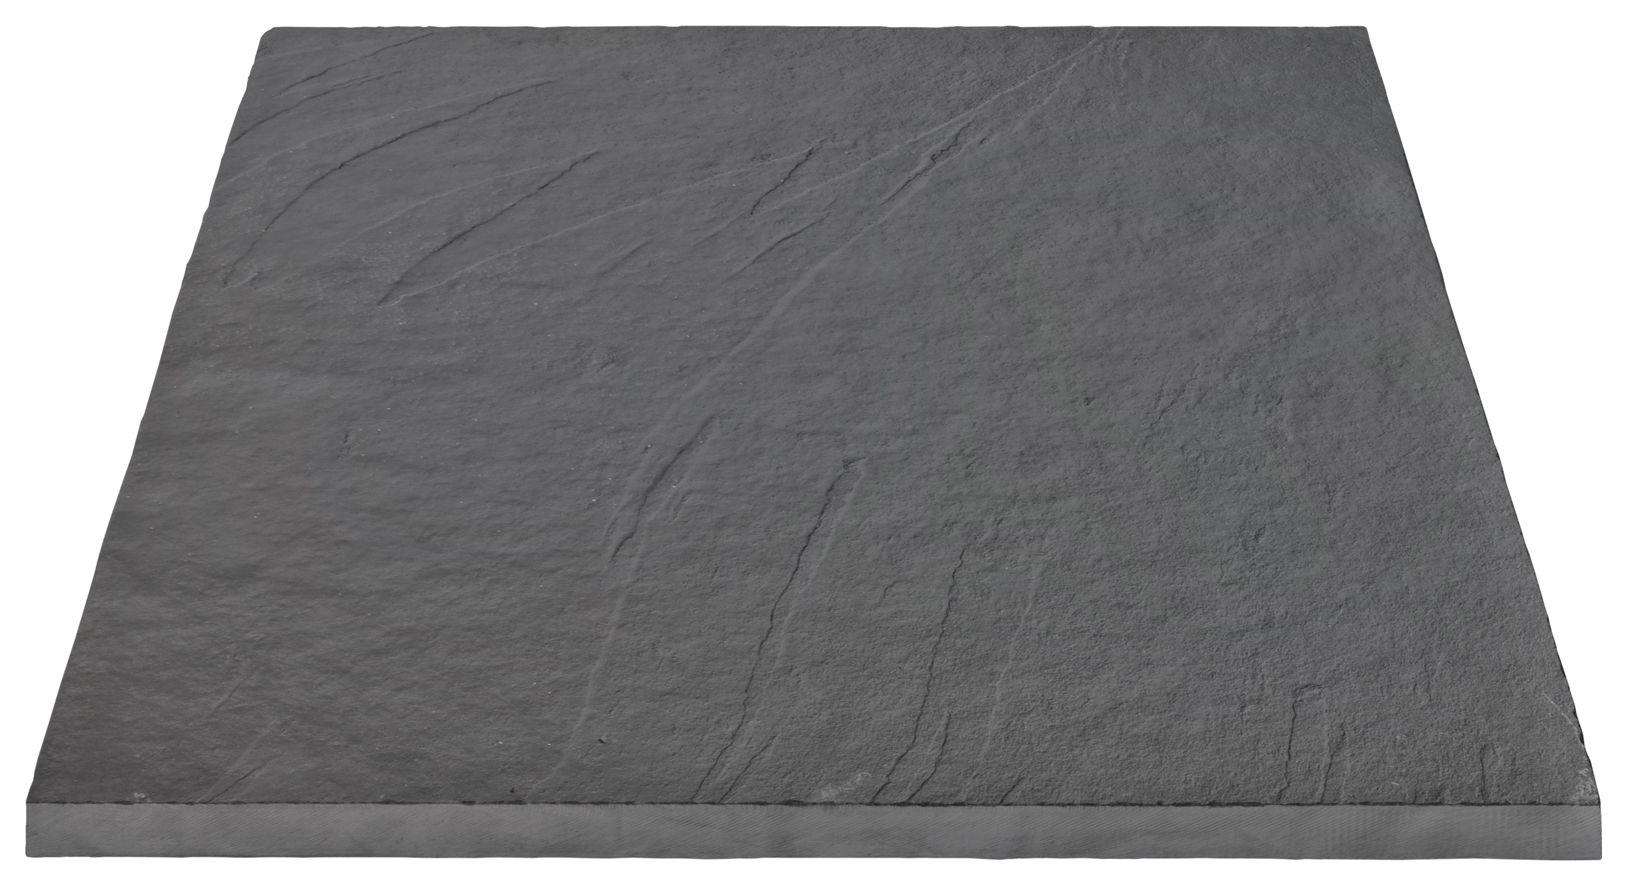 Image of Marshalls Casarta Slate Textured Black Paving Slab - Sample